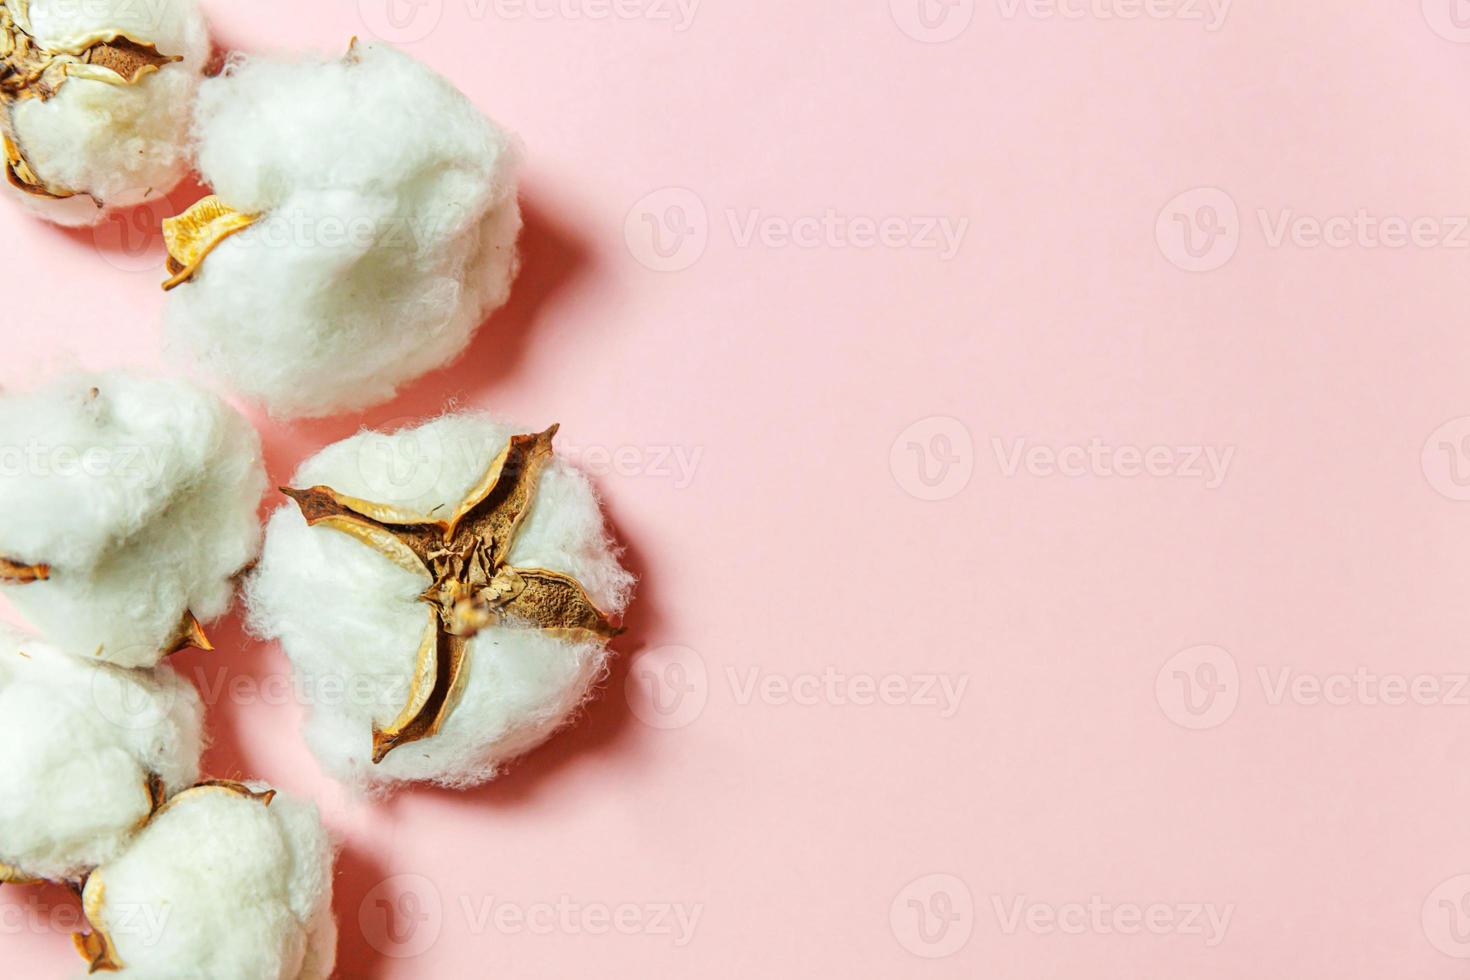 diseño simplemente minimalista con flores de algodón blanco aisladas sobre fondo rosa pastel. tela tela suavidad concepto de alergia de granja orgánica natural. foto